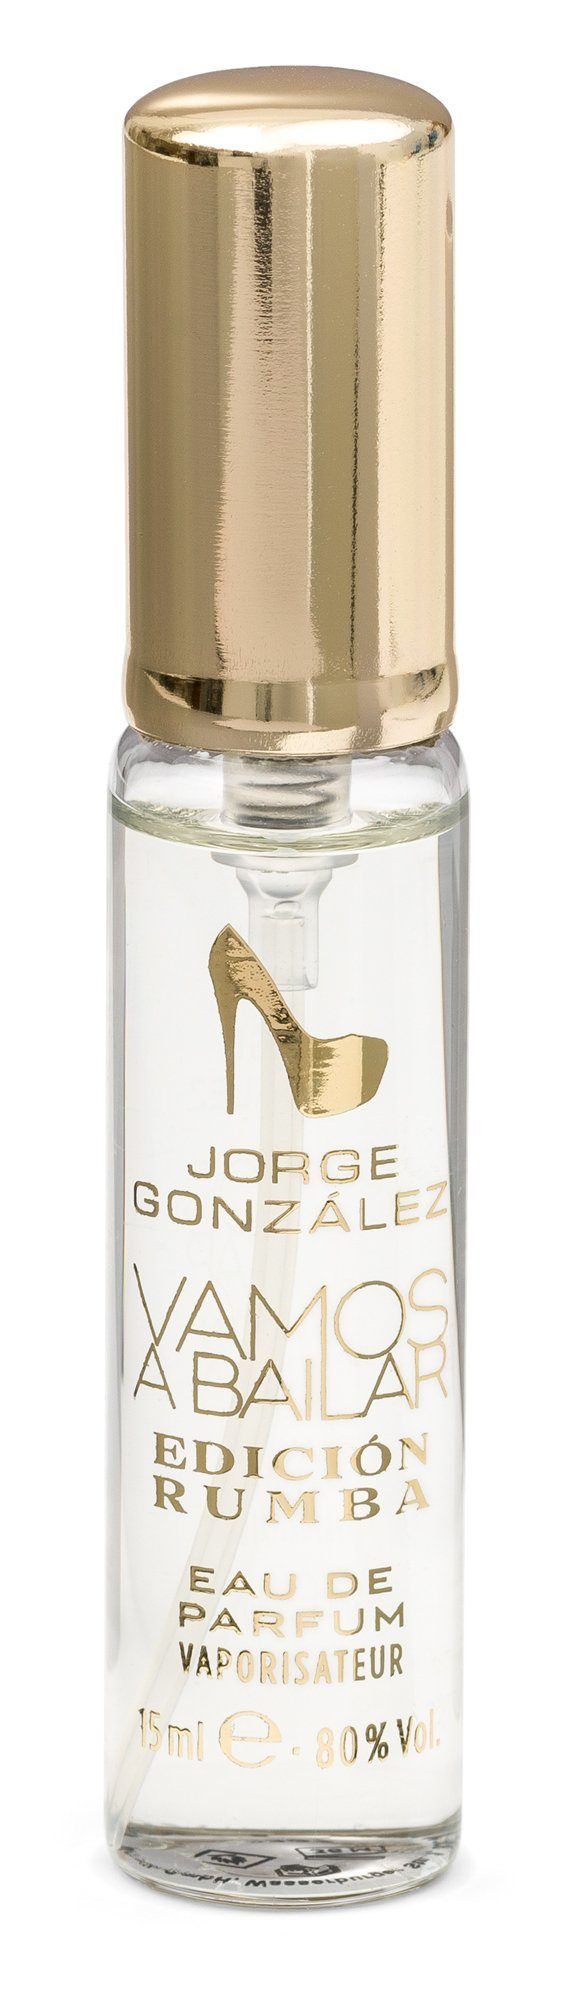 JORGE GONZÁLEZ Eau de ml; Parfum EDICIÓN 100 Frauen Duftset Parfum, de ml 15 Eau für + Duft RUMBA